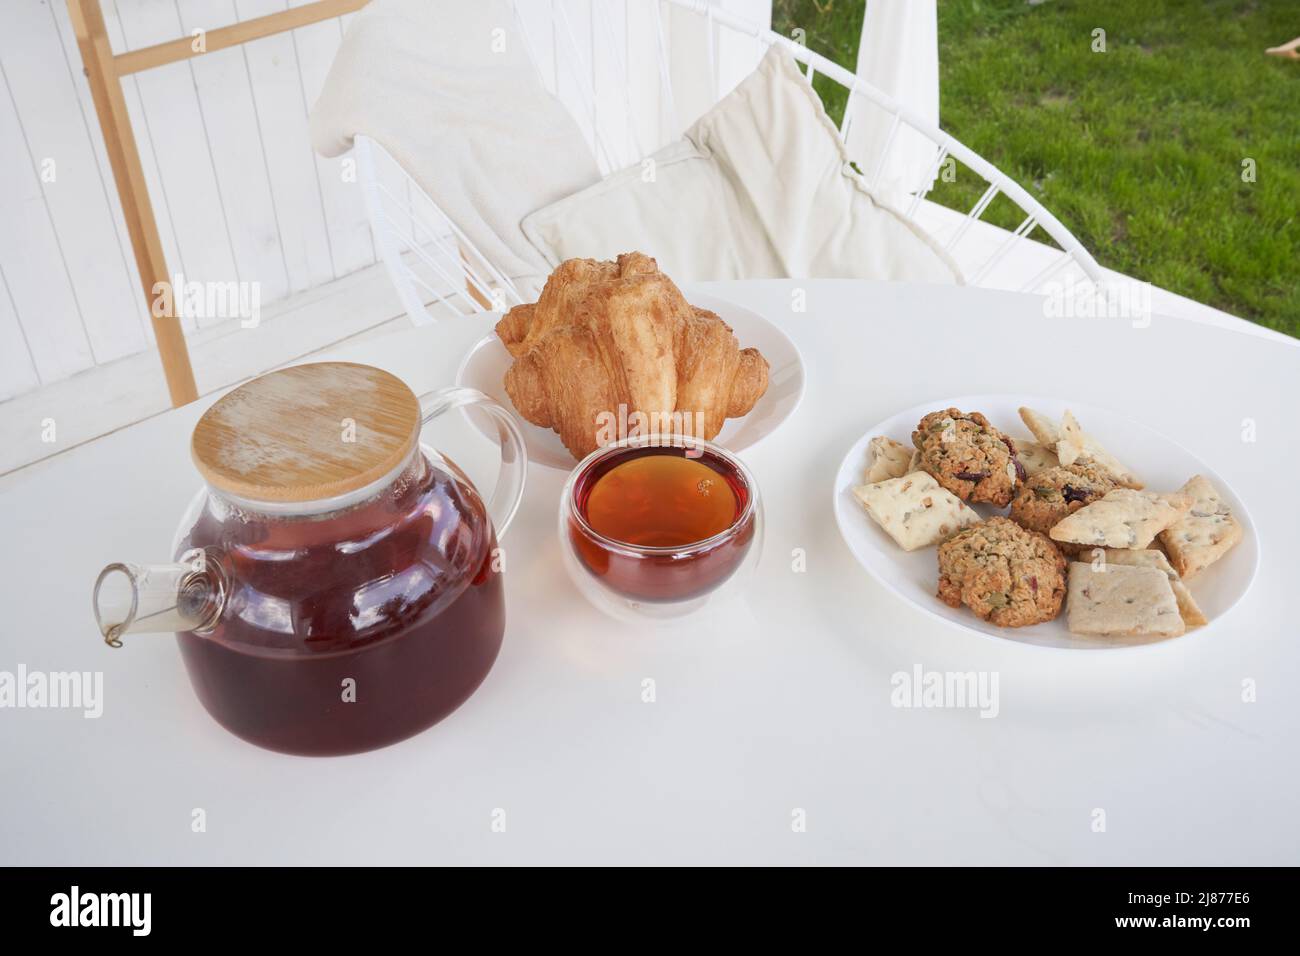 Sonntagsfrühstück im Hinterhof der Hütte. Frische süße Croissants mit Keksen auf dem Tisch. Transparente Teekane aus Glas mit gebrühtem Tee. Hochwertige Fotos Stockfoto